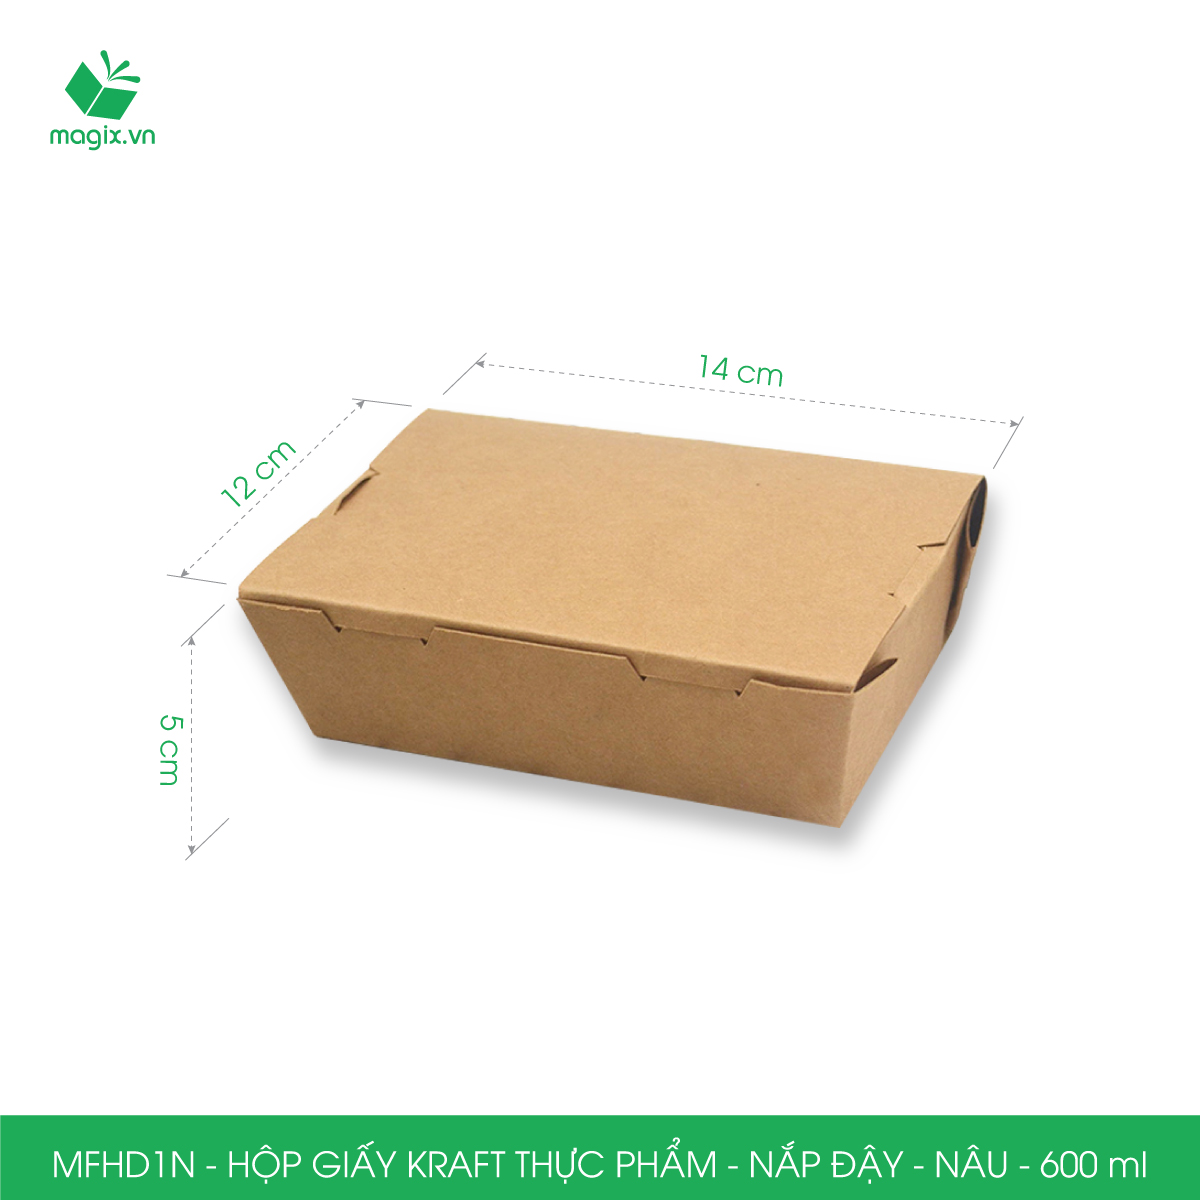 MFHD1N - Combo 50 hộp giấy kraft thực phẩm 600ml, hộp đựng thức ăn nắp đậy màu nâu, hộp gói đồ ăn mang đi